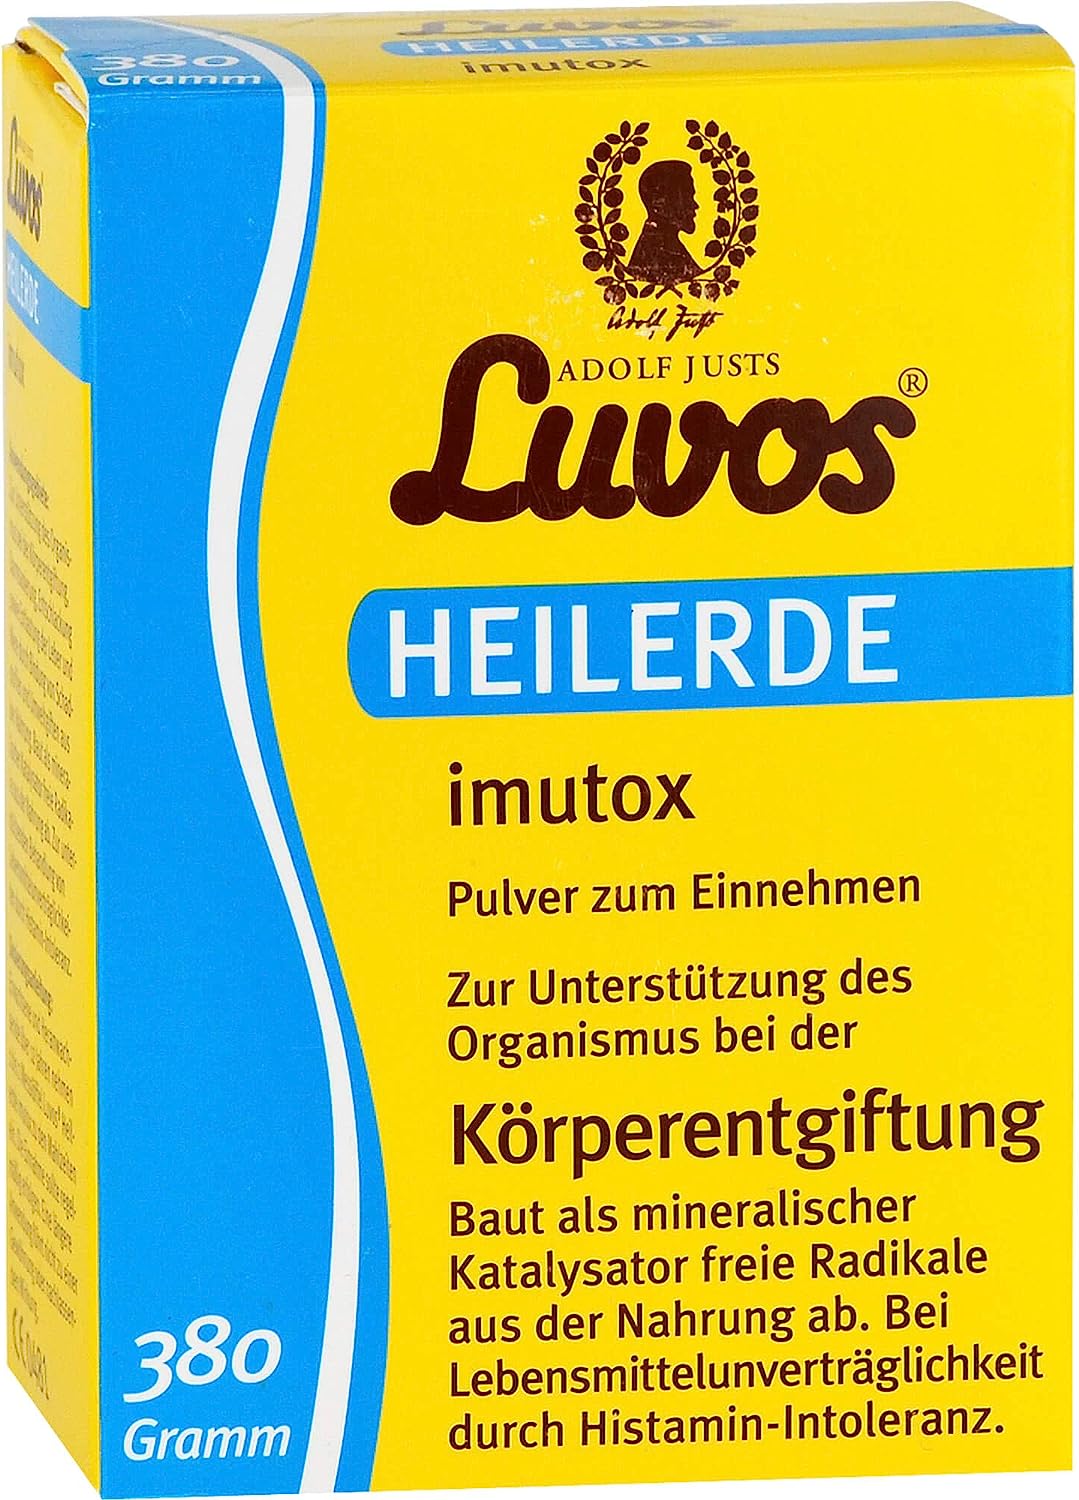 Luvos Heilerde imutox | 380g Pulver | Bindungsmittel gegen Schadstoffe